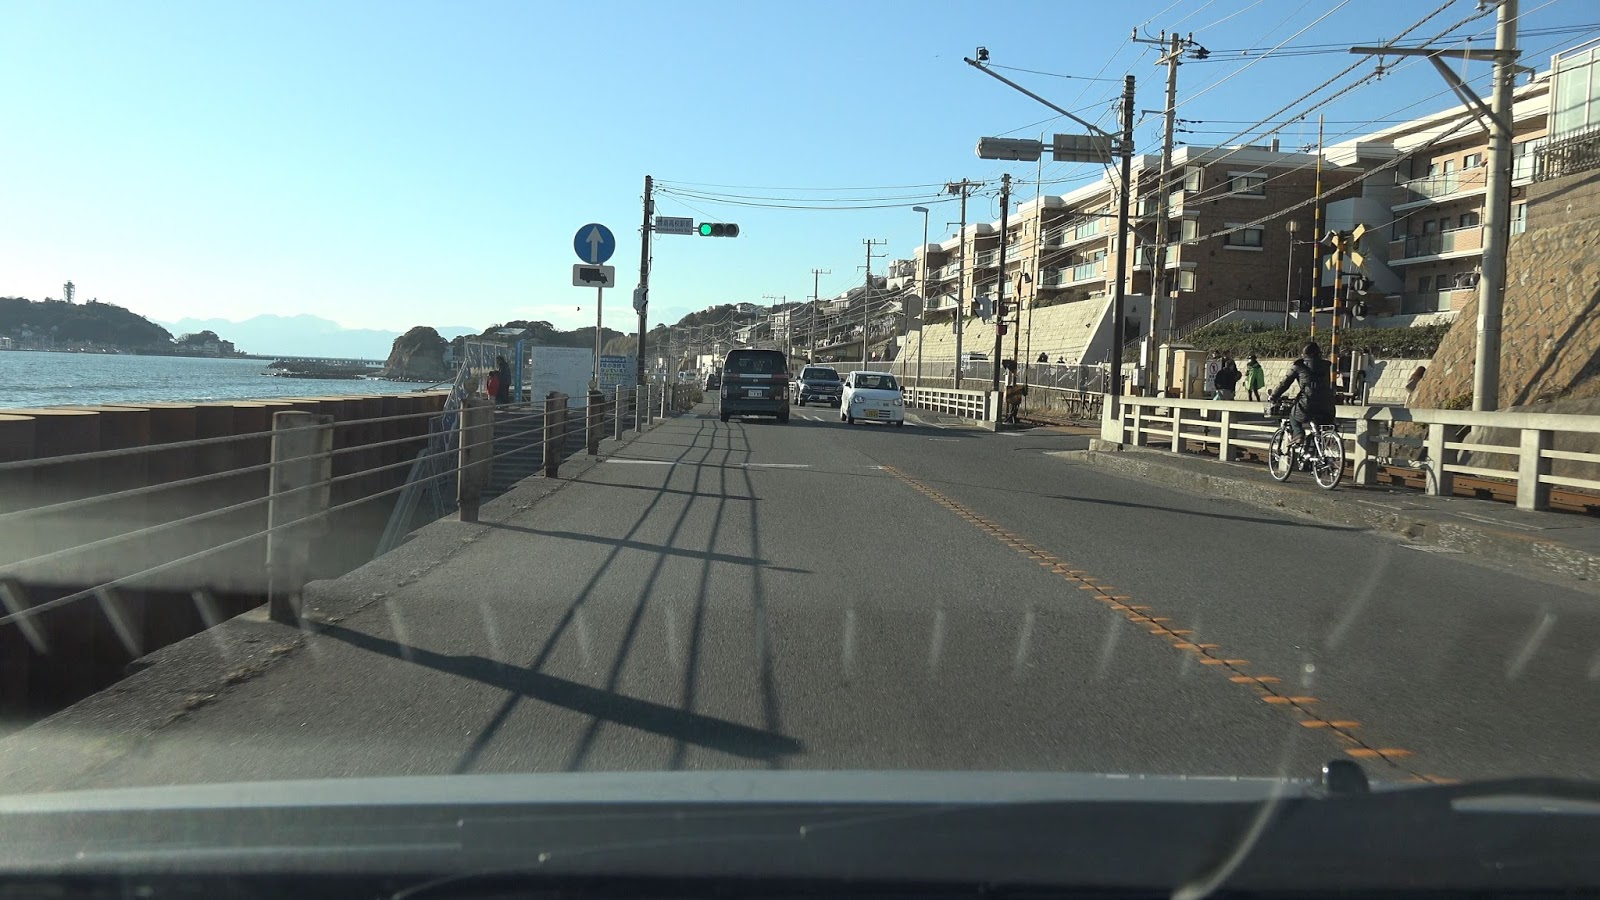 Rcp193の道路についてのブログ 道路以外もあります 国道134号 鎌倉 江の島の渋滞はどうして起こるのか 実際に通ってみて感じたこと